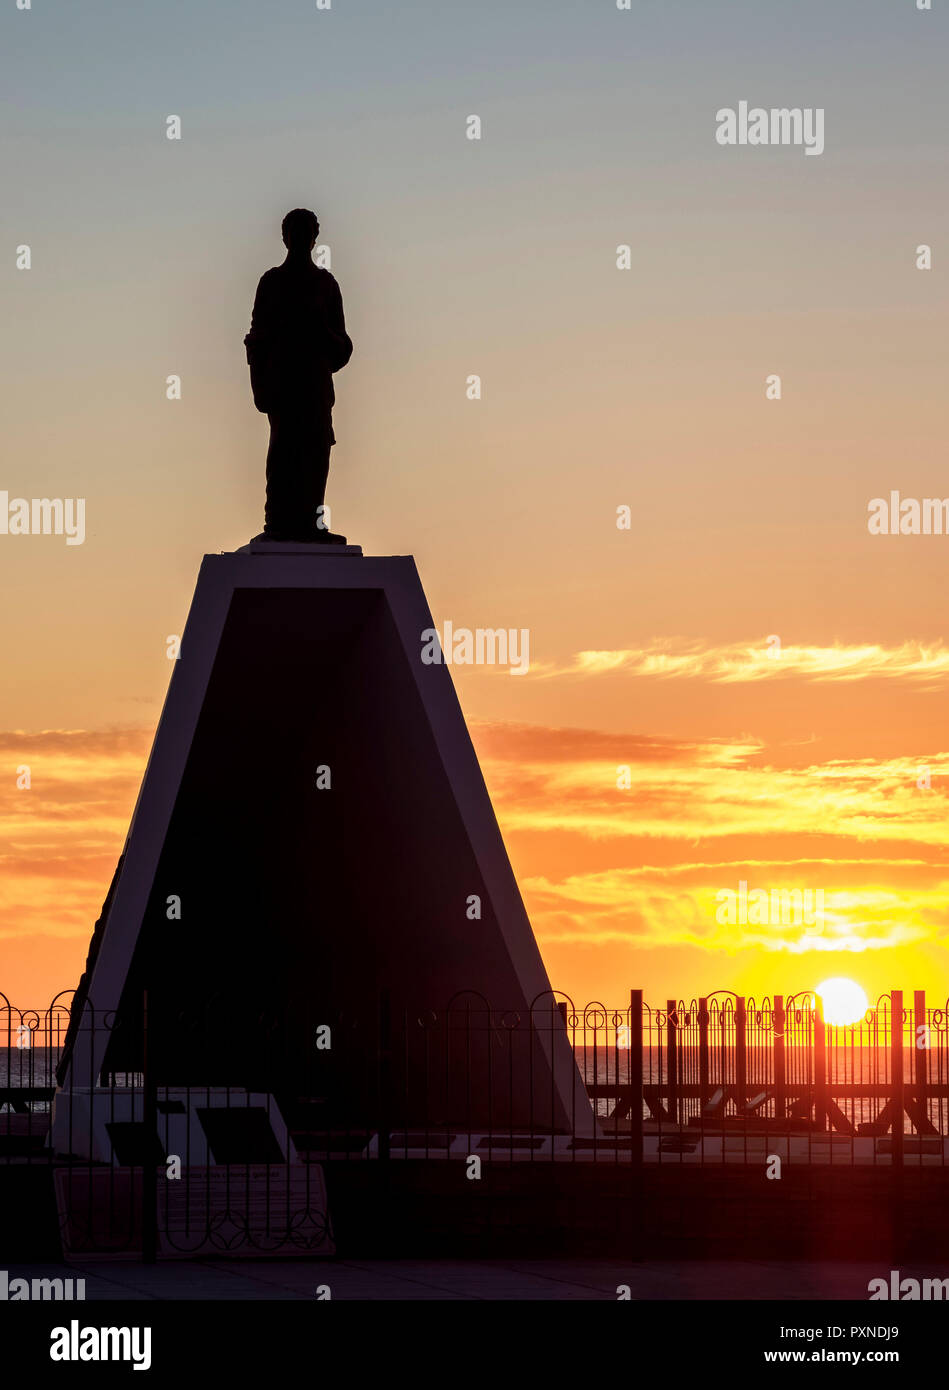 Denkmal für die Walisische Siedler bei Sonnenaufgang, Puerto Madryn, der Waliser Siedlung, Provinz Chubut, Patagonien, Argentinien Stockfoto